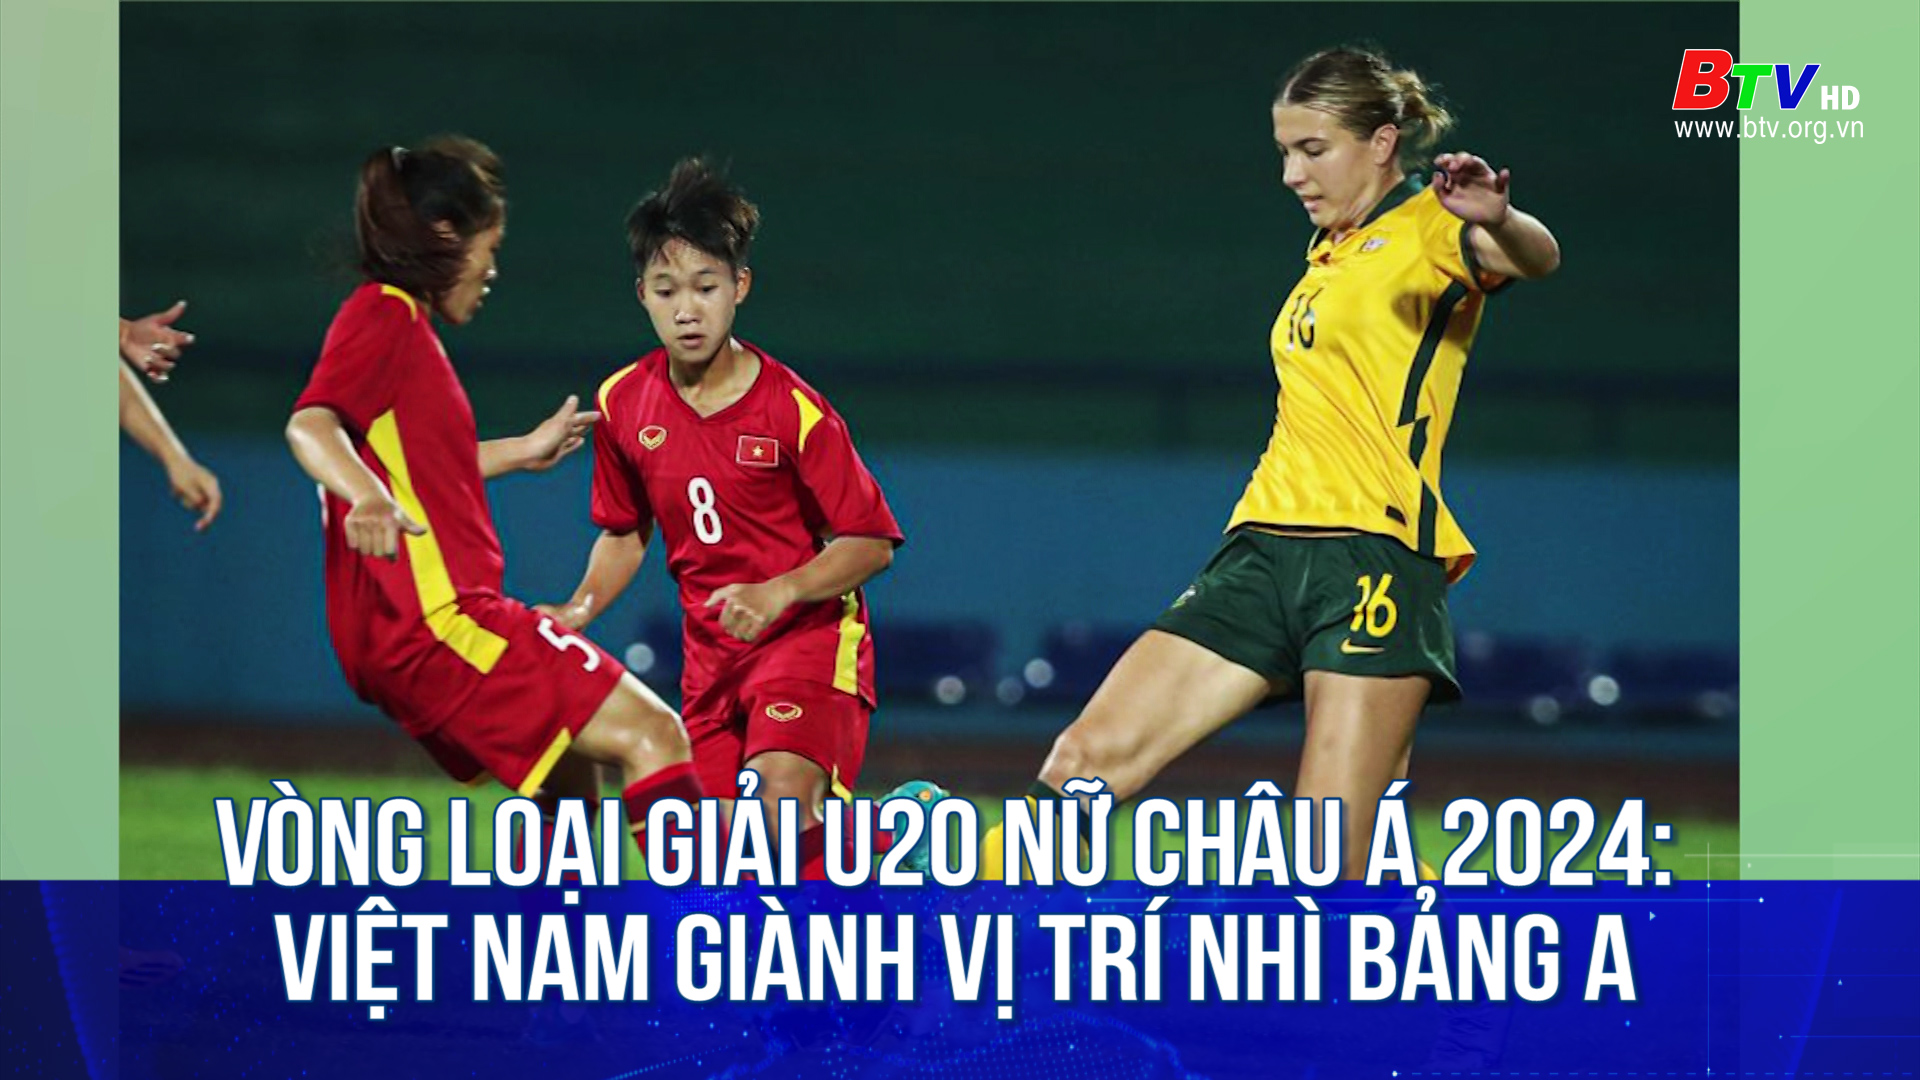 Vòng loại Giải U20 nữ châu Á 2024: Việt Nam giành vị trí nhì bảng A